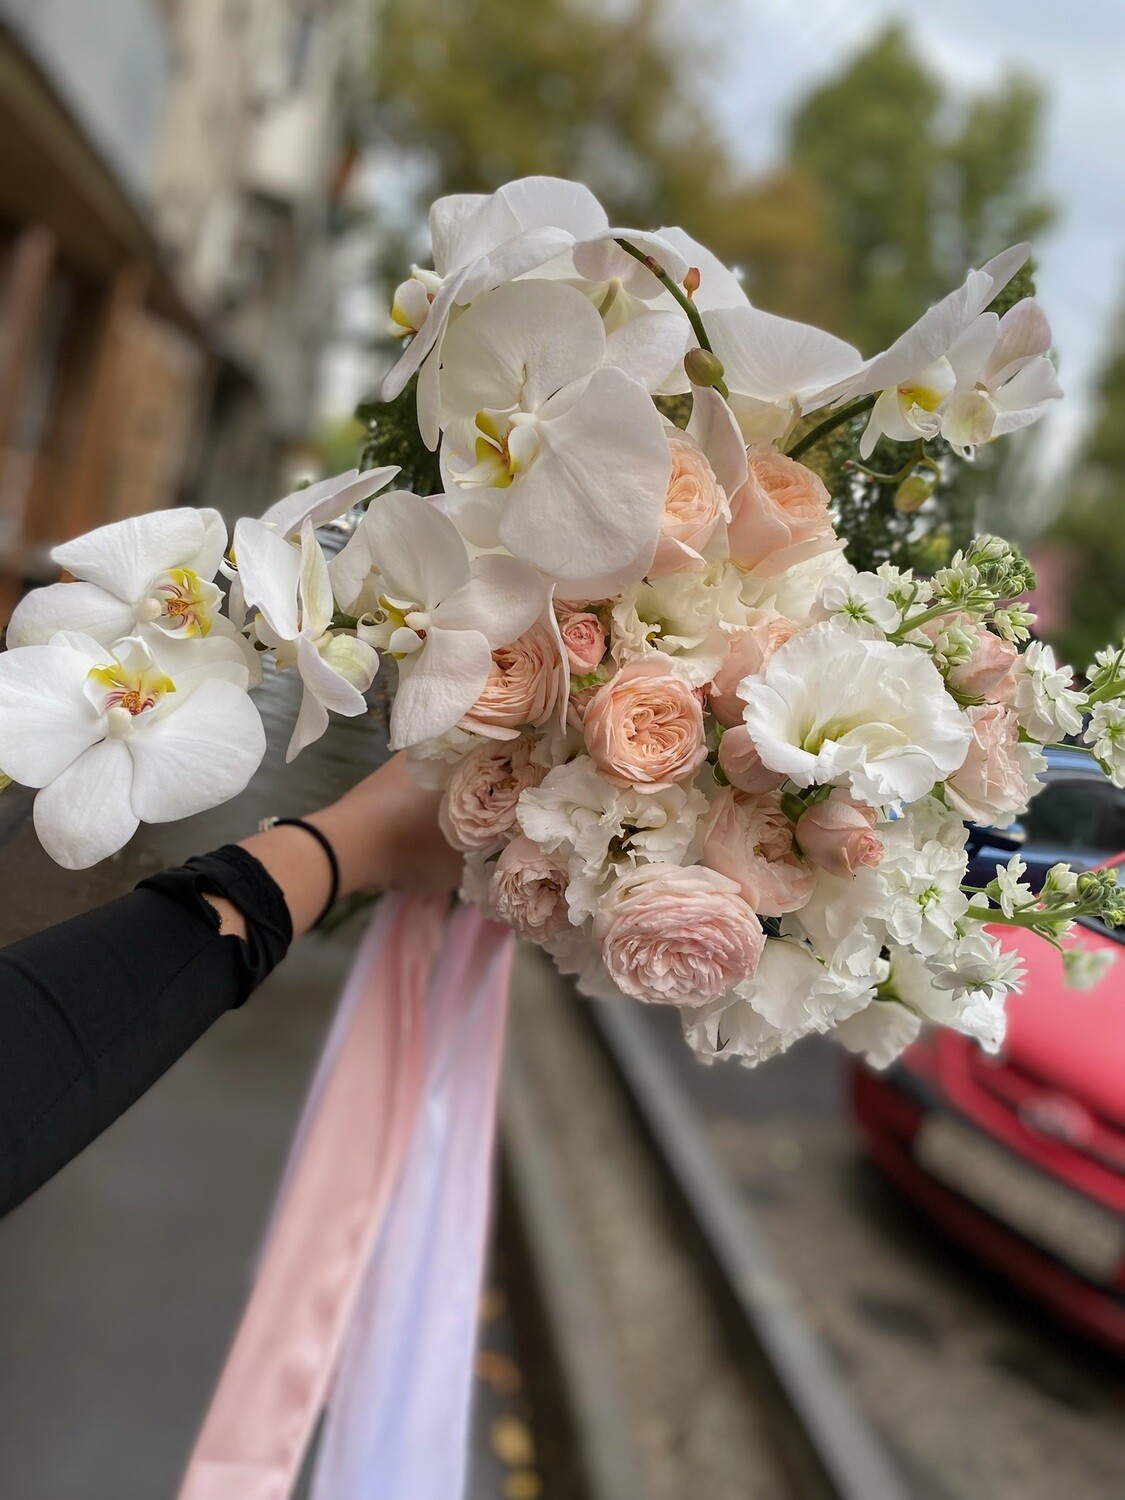 "Свадебный букет невесты «Изящество и стиль» с доставкой от «Цветы Луны»"